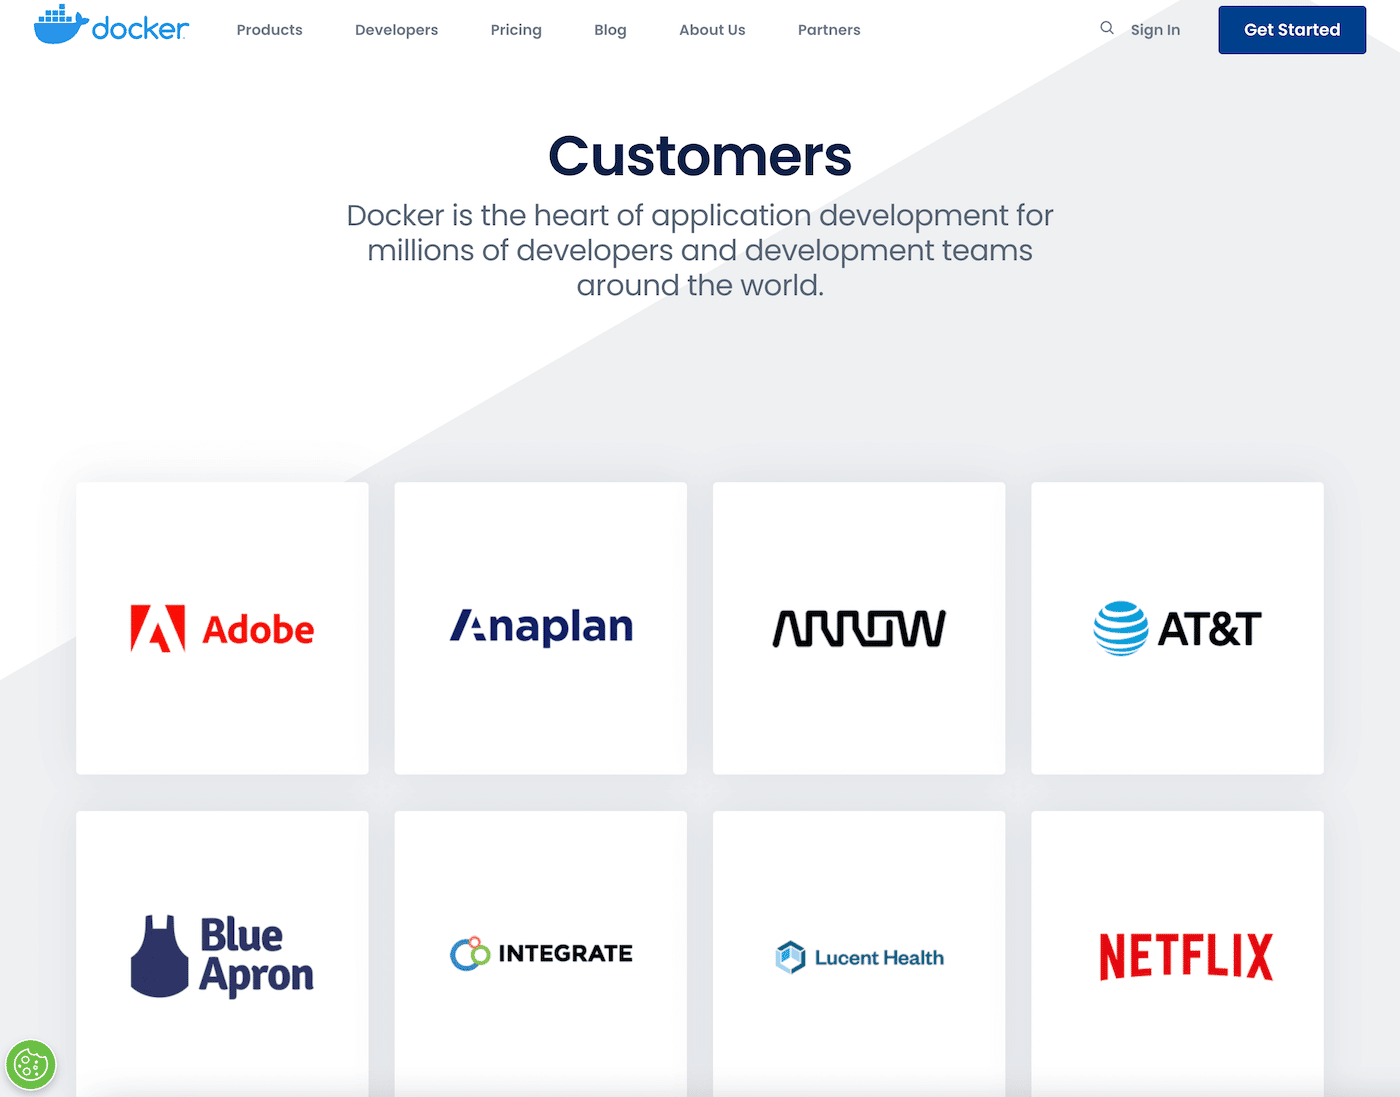 Schermata delle aziende che usano Docker, tra cui Adobe, AT&T, Blue Apron e Netflix